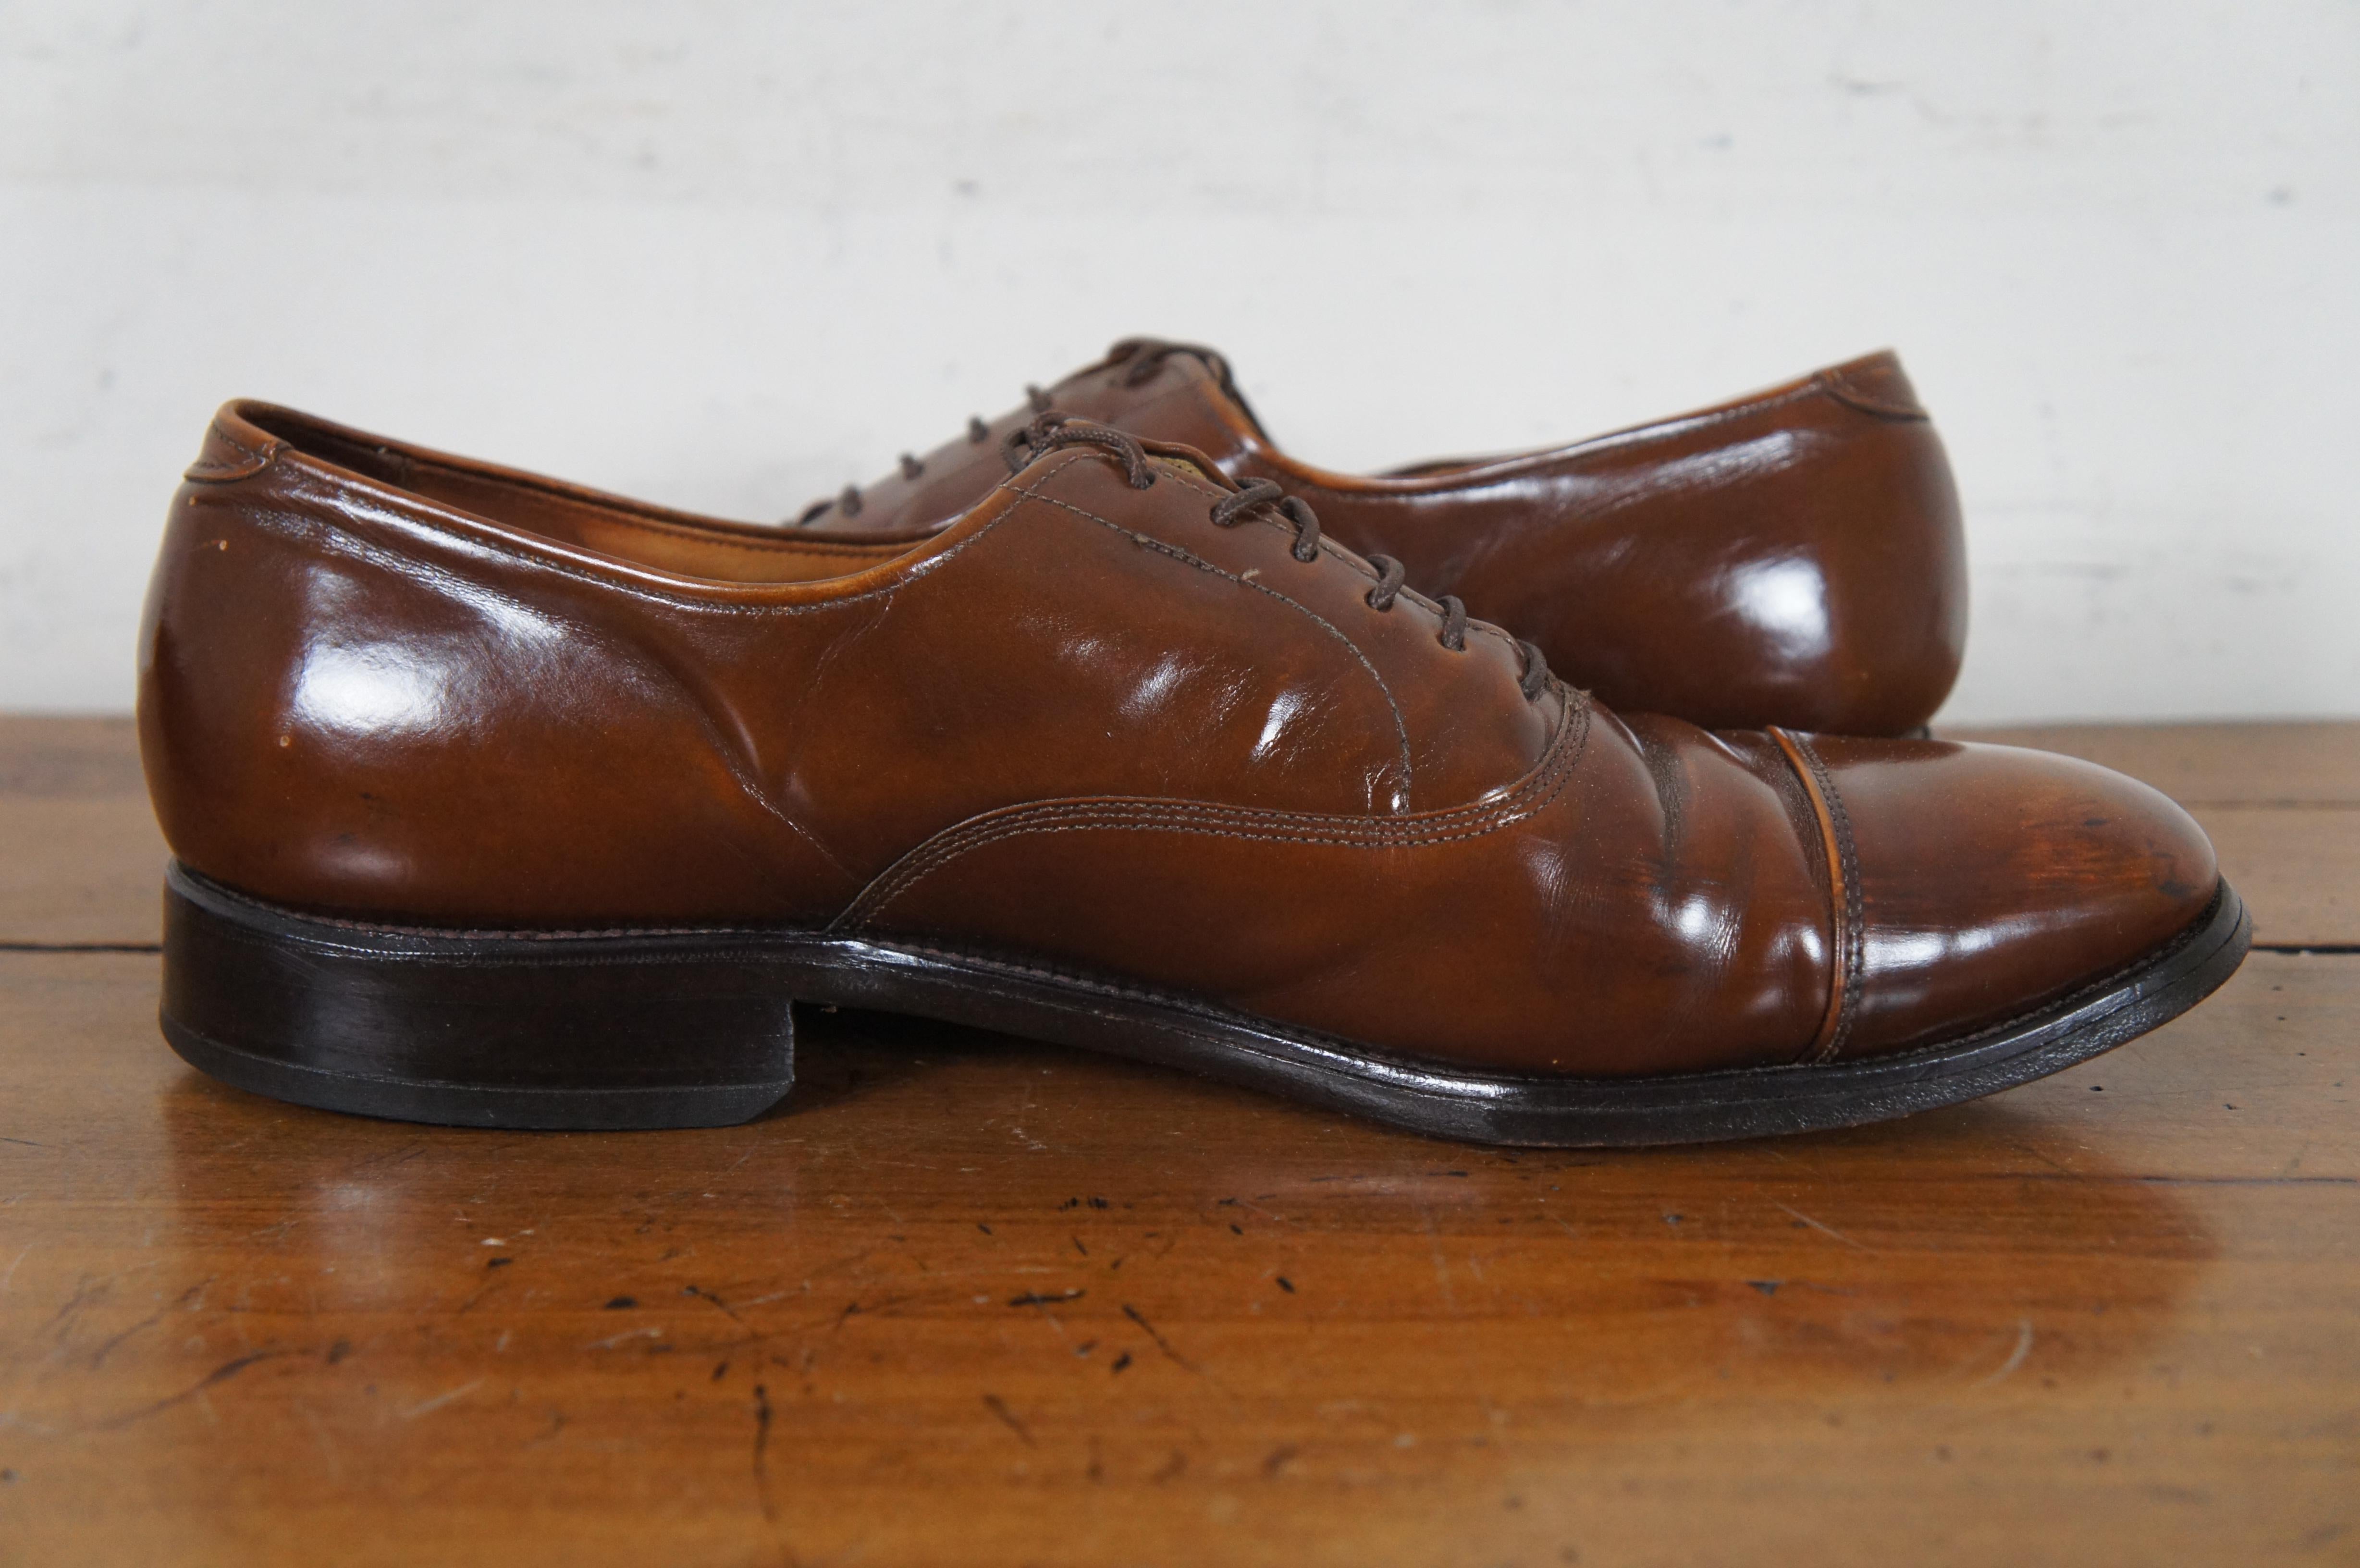 North American Vintage Allen Edmonds Park Avenue Walnut Brown Cap Toe Oxford Dress Shoes For Sale